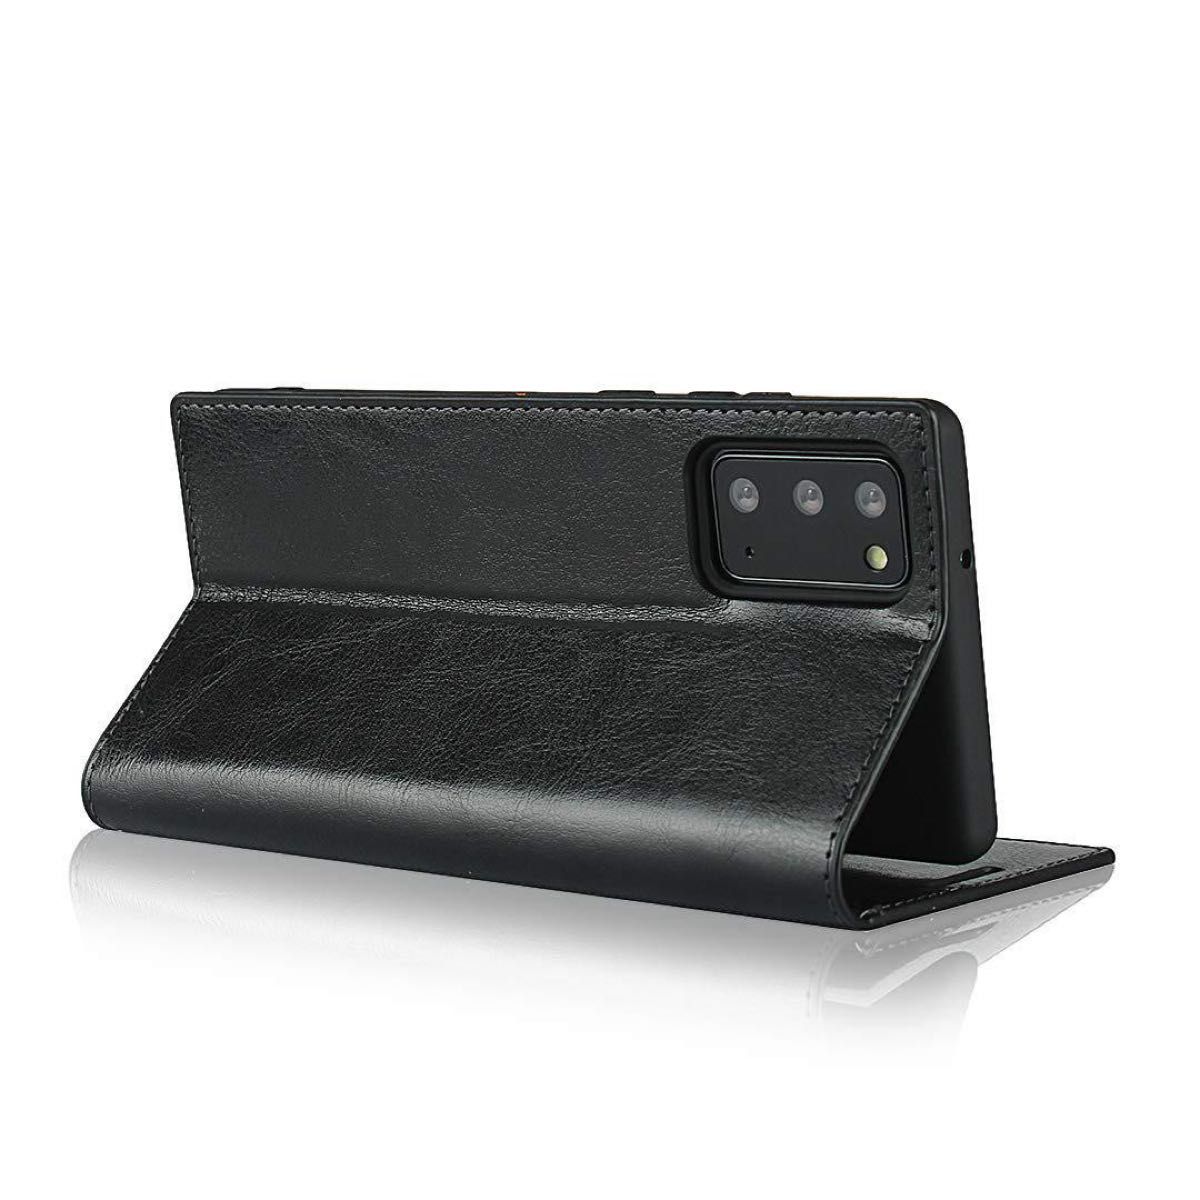 サムスン ギャラクシー Galaxy Note20 ケース 手帳型 カバーSamsung 財布型 カバー 手帳 収納ポケット 牛革